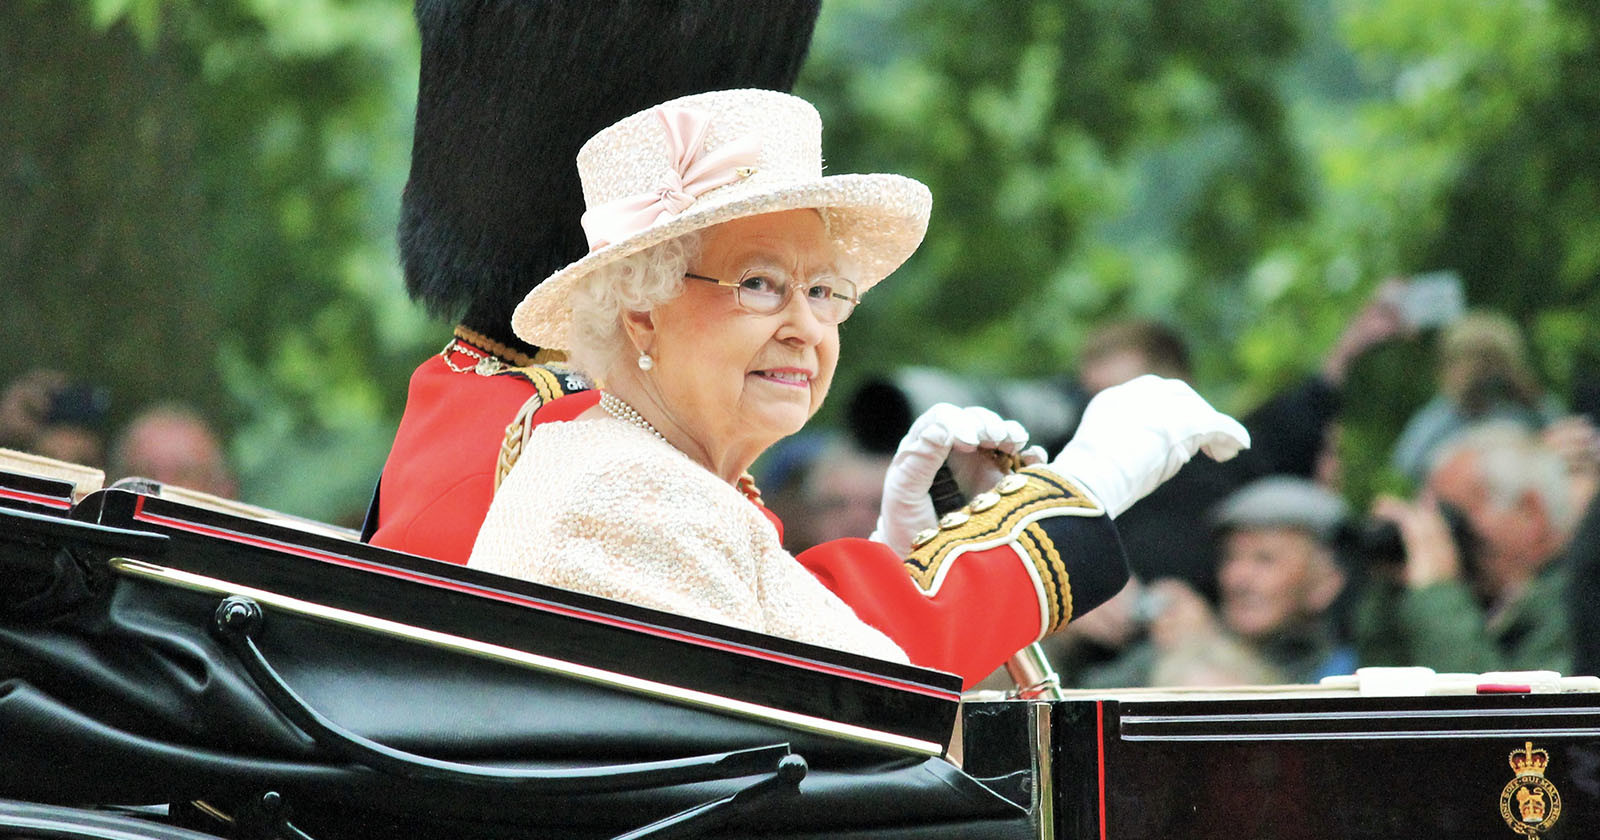  photographer reveals queen elizabeth hated her hands being 